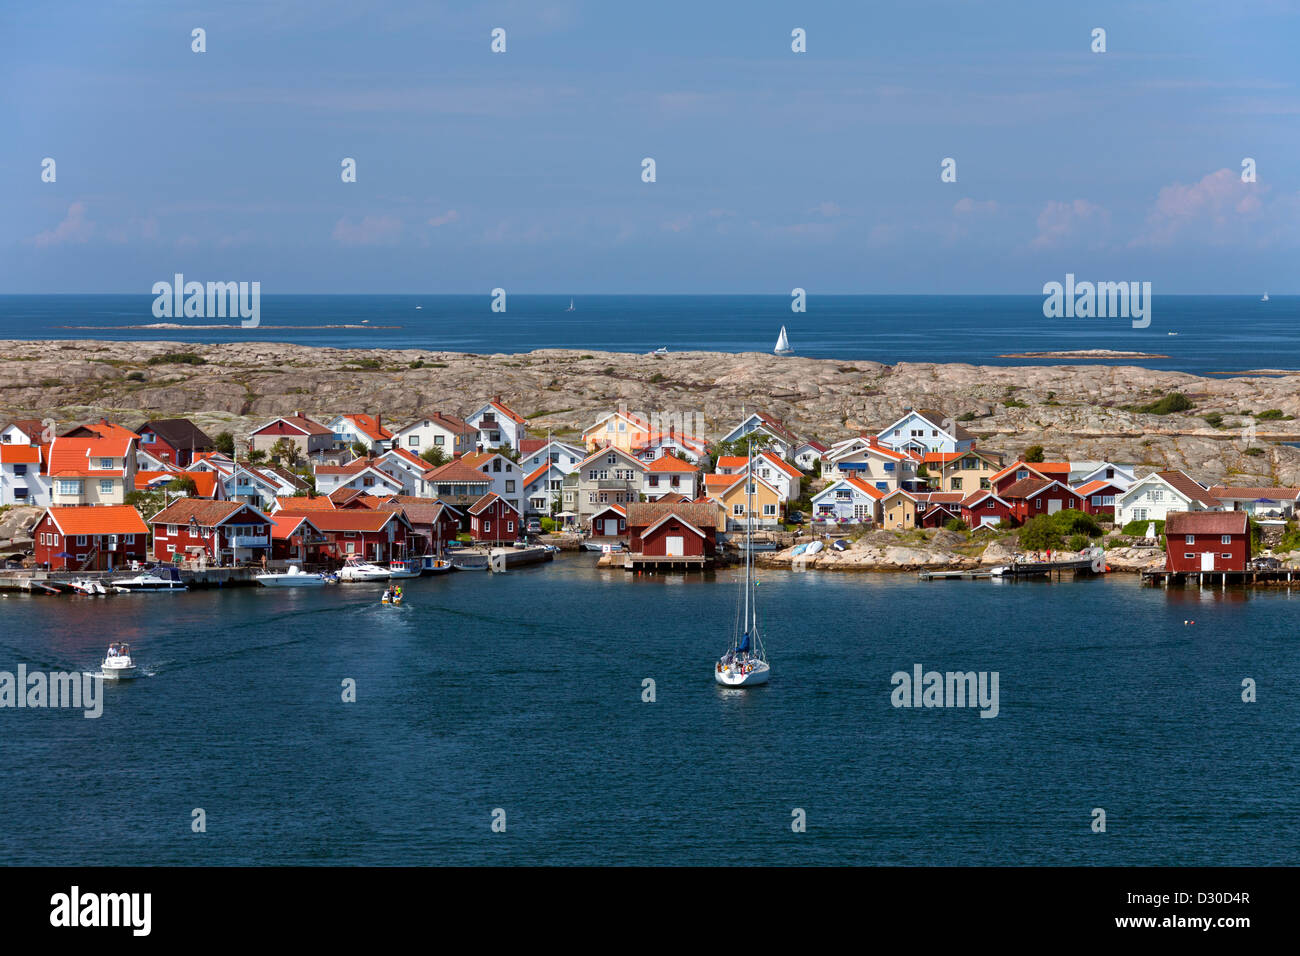 Hölzerne Fischerhütten im Dorf Smögen, Bohuslän, Schweden, Scandinavia Stockfoto